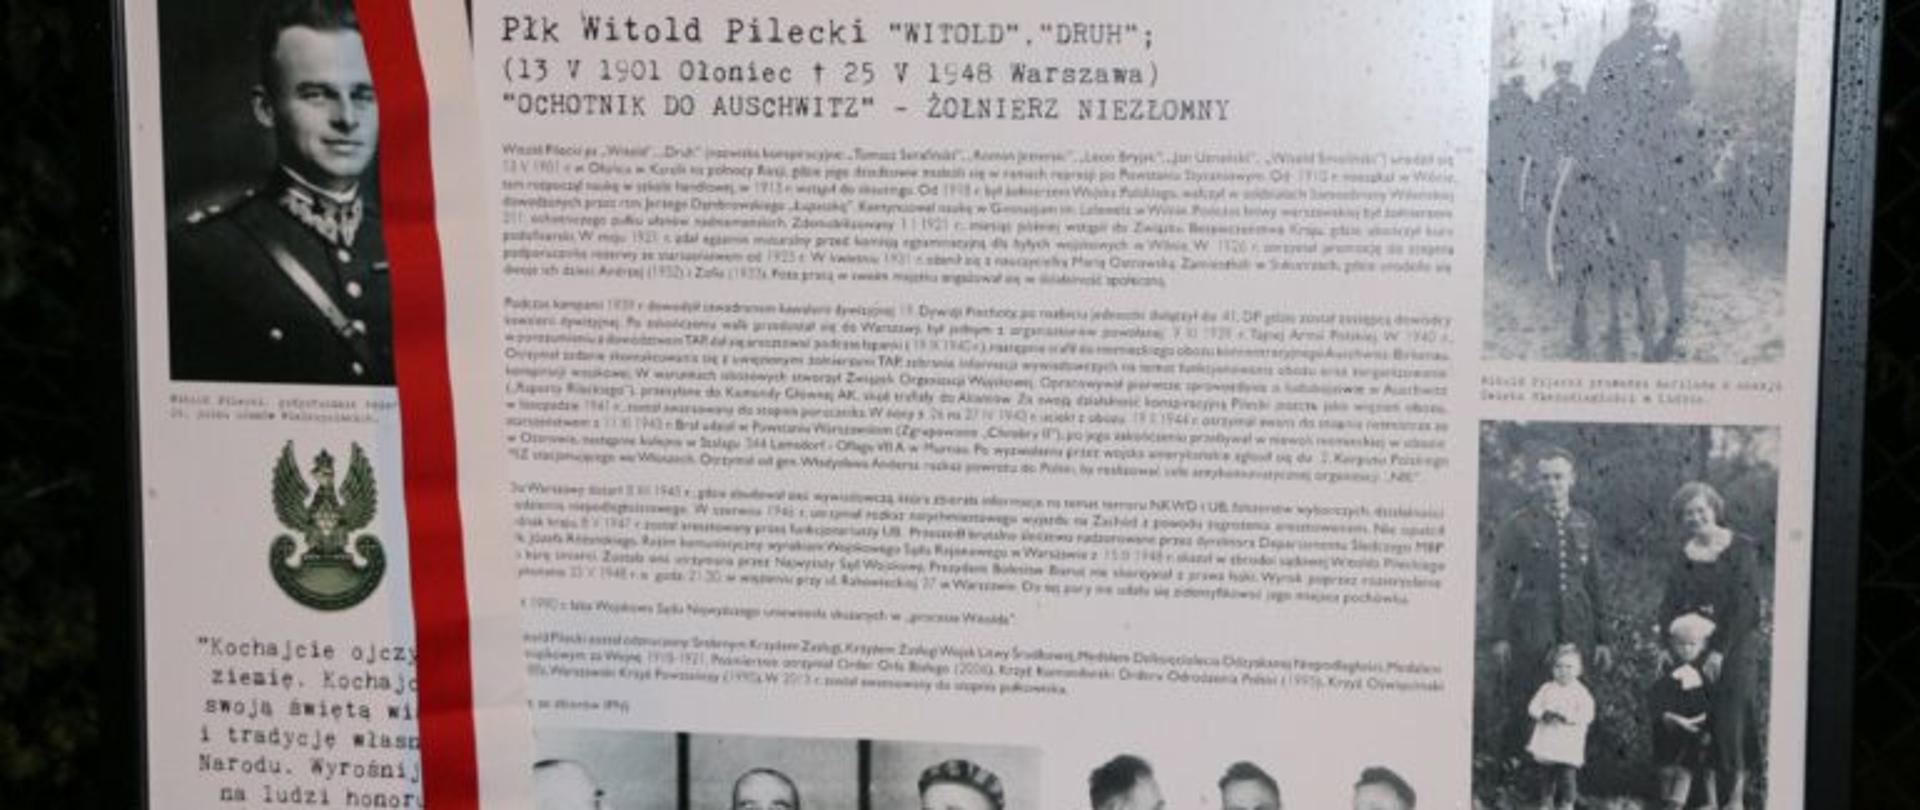 Tablica upamiętniająca płk Witolda Pileckiego - zawiera zdjęcia przedstawiające rotmistrza oraz jego życiorys